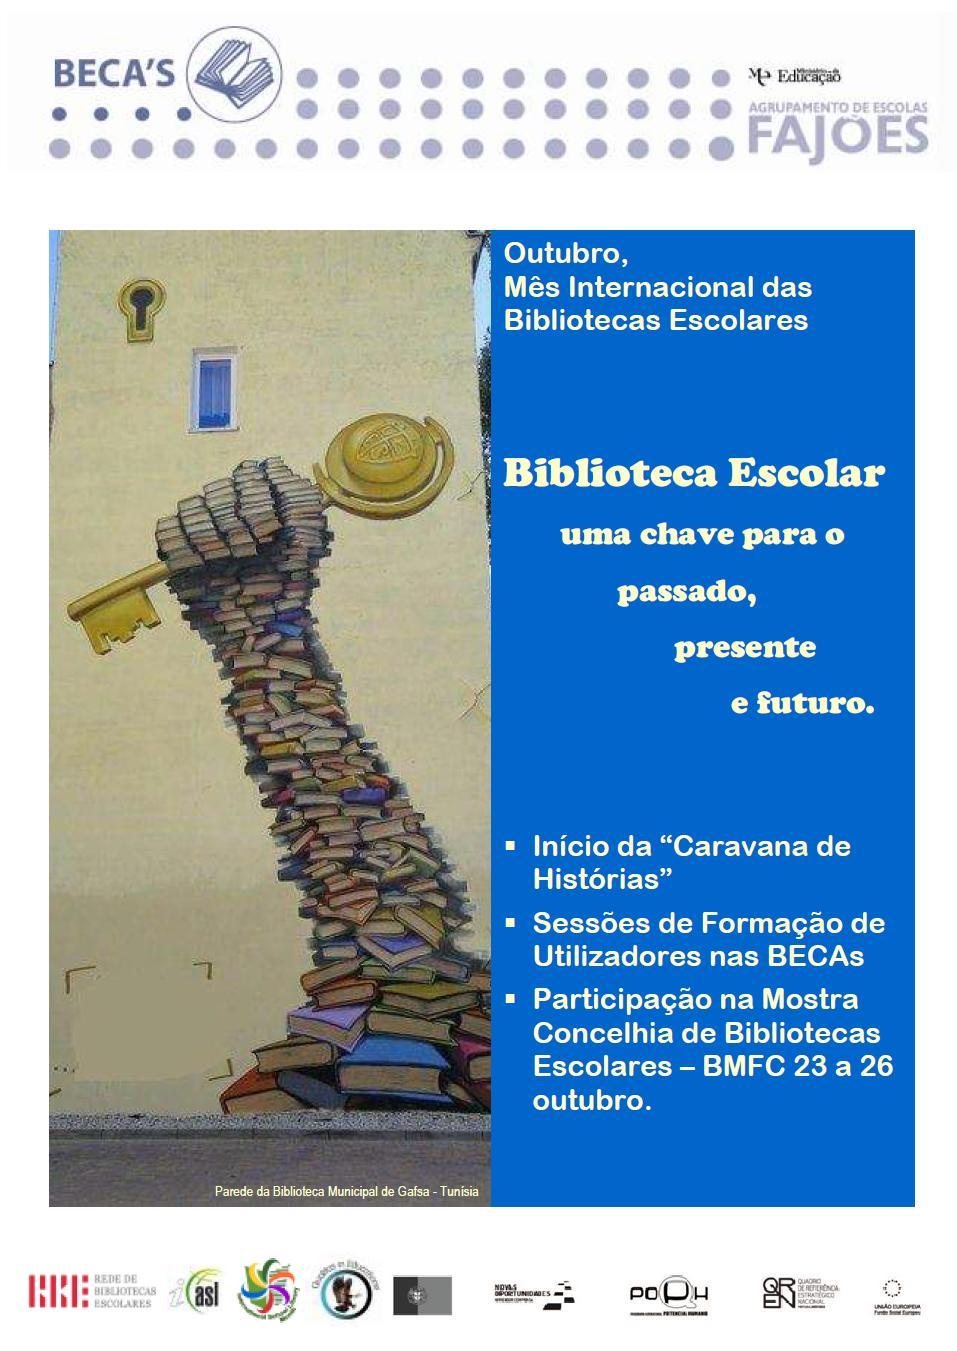 Mês Internacional das Bibliotecas Escolares
